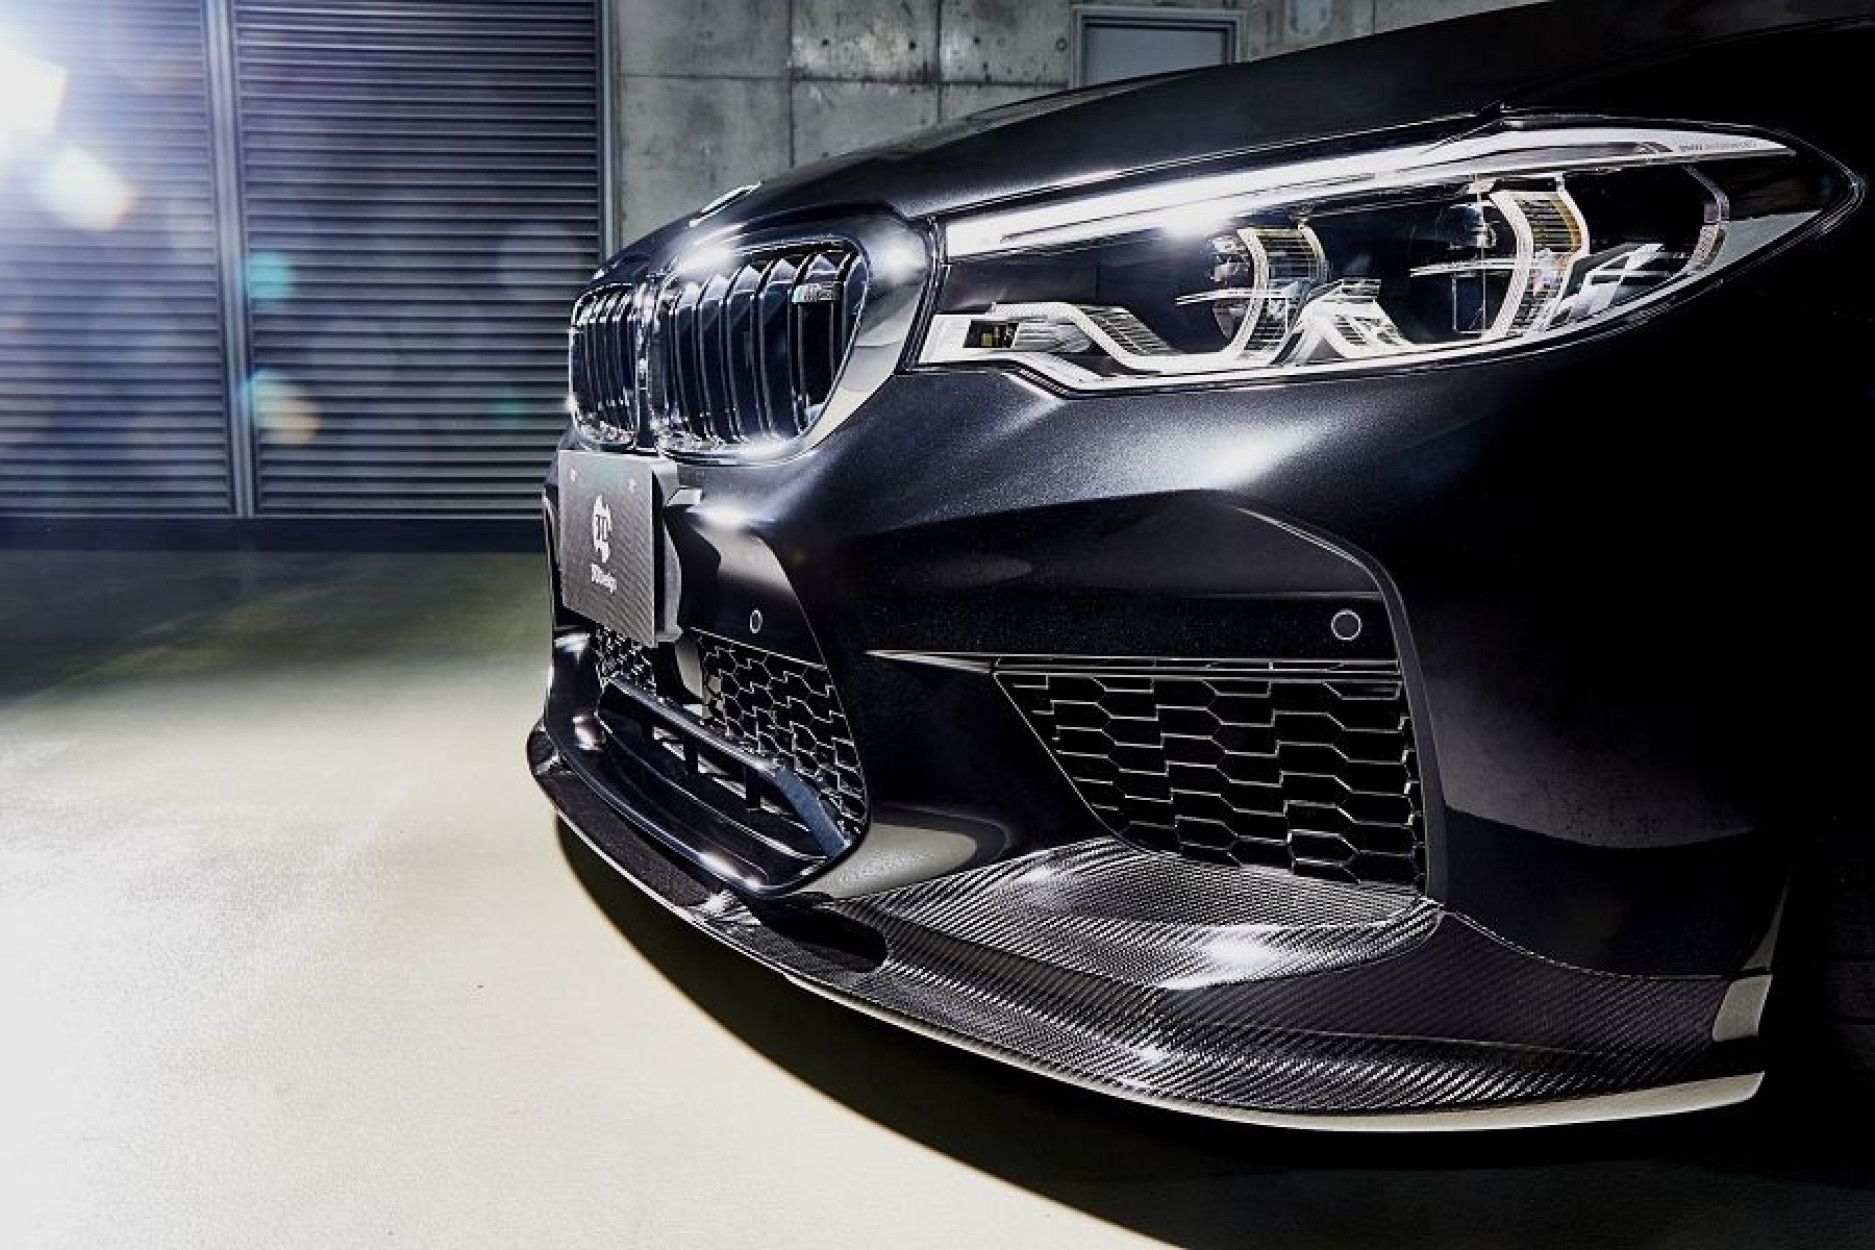 3DDesign Carbon Frontlippe für BMW F90 M5 Vorfacelift